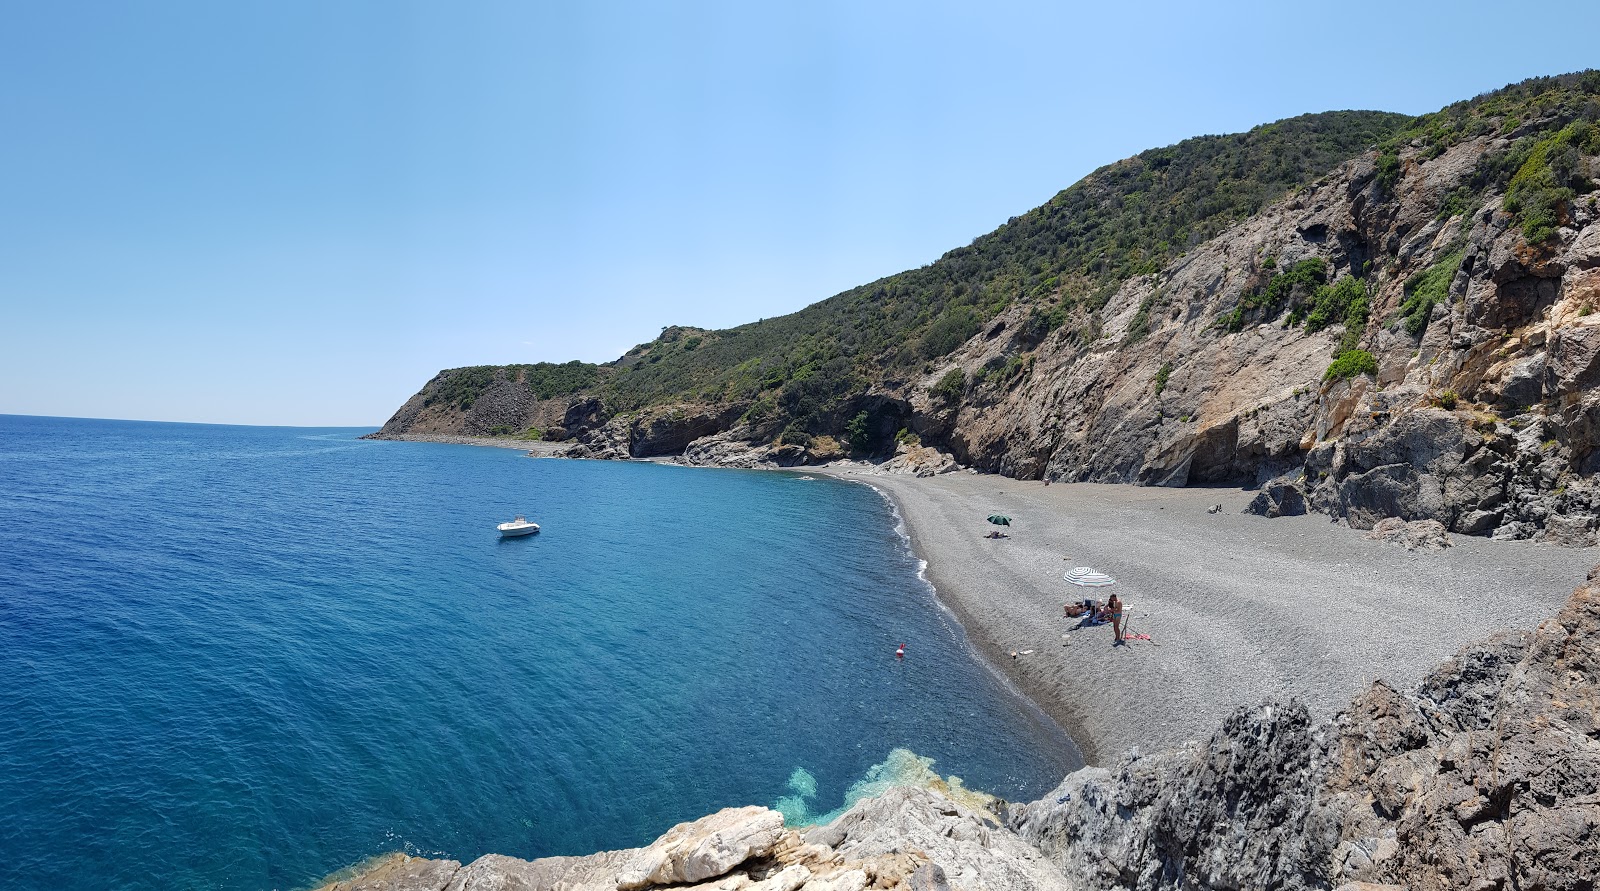 Fotografie cu Spiaggia del Ginepro cu o suprafață de pietricel gri fin